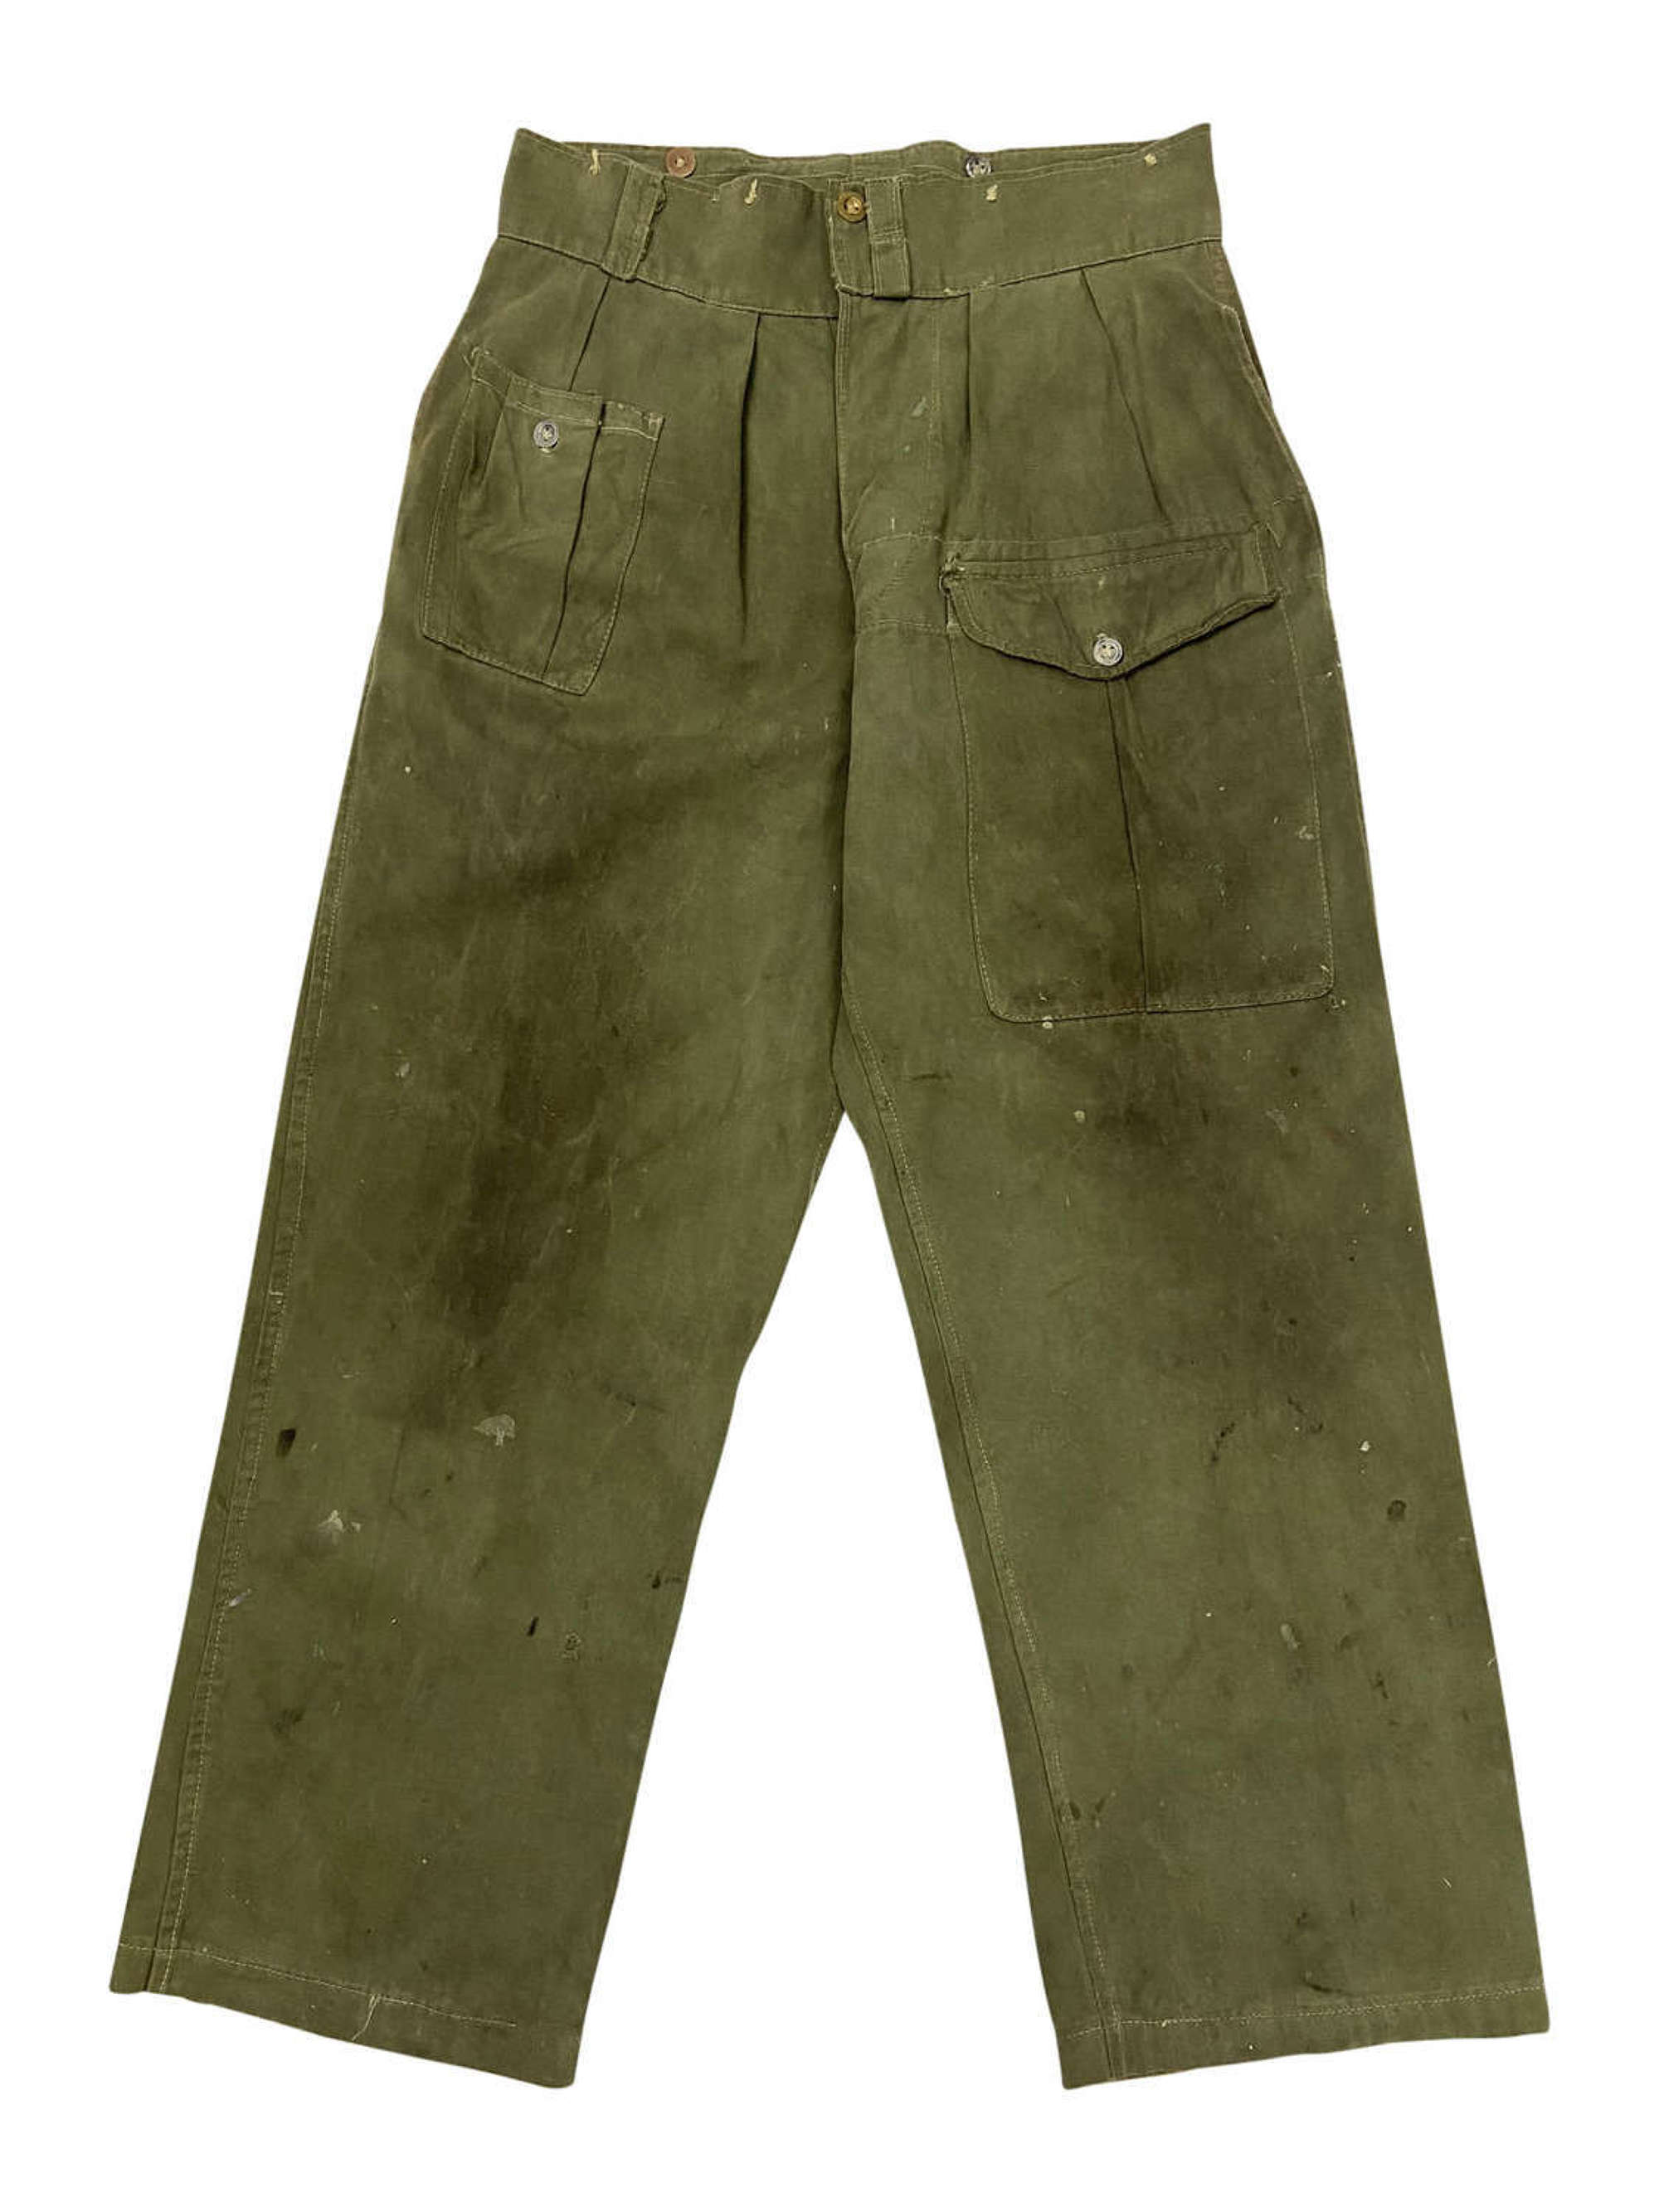 Original 1945 Dated Indian Made Jungle Green Battledress Trousers